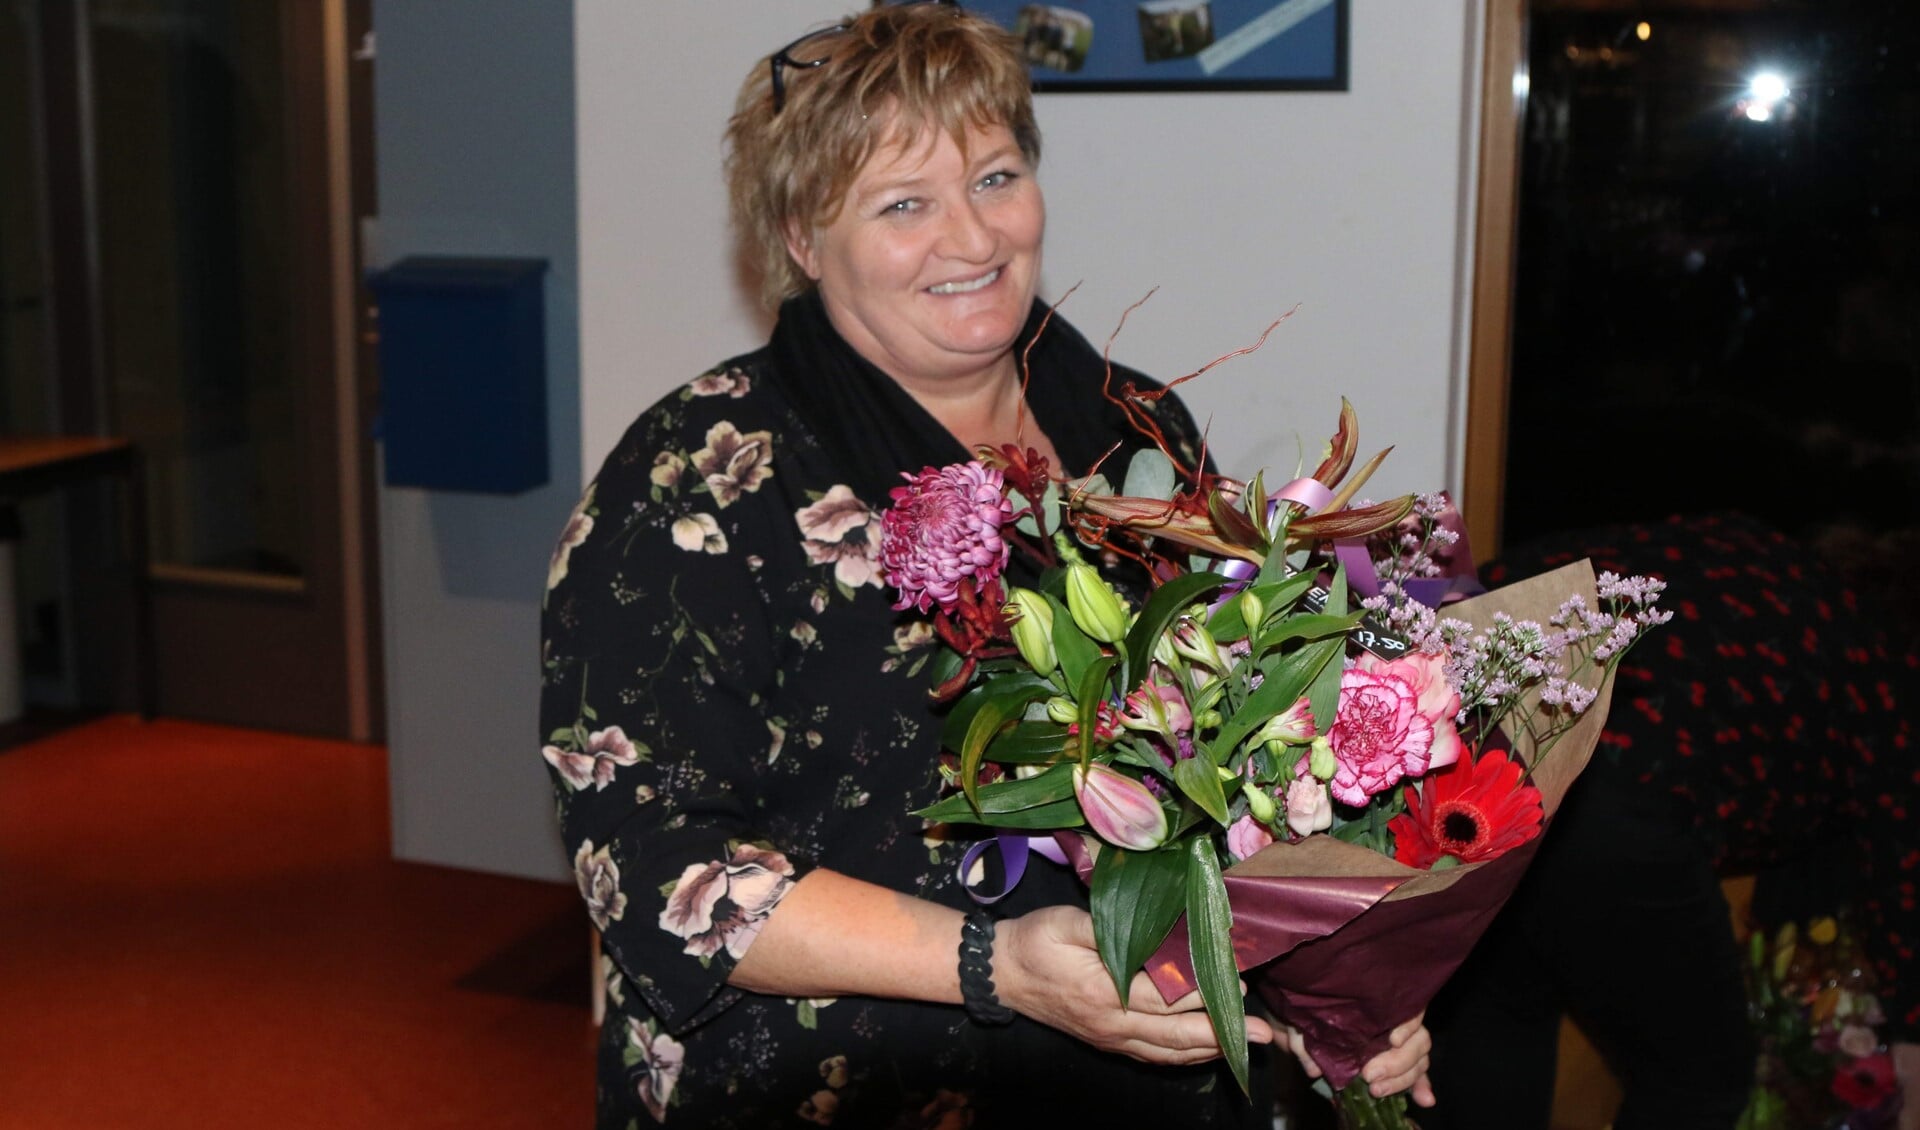 Aftredend secretaris Heidi van der Heiden met bloemen uitgezwaaid (foto: Lid van verdienste Marcel de Bakker)